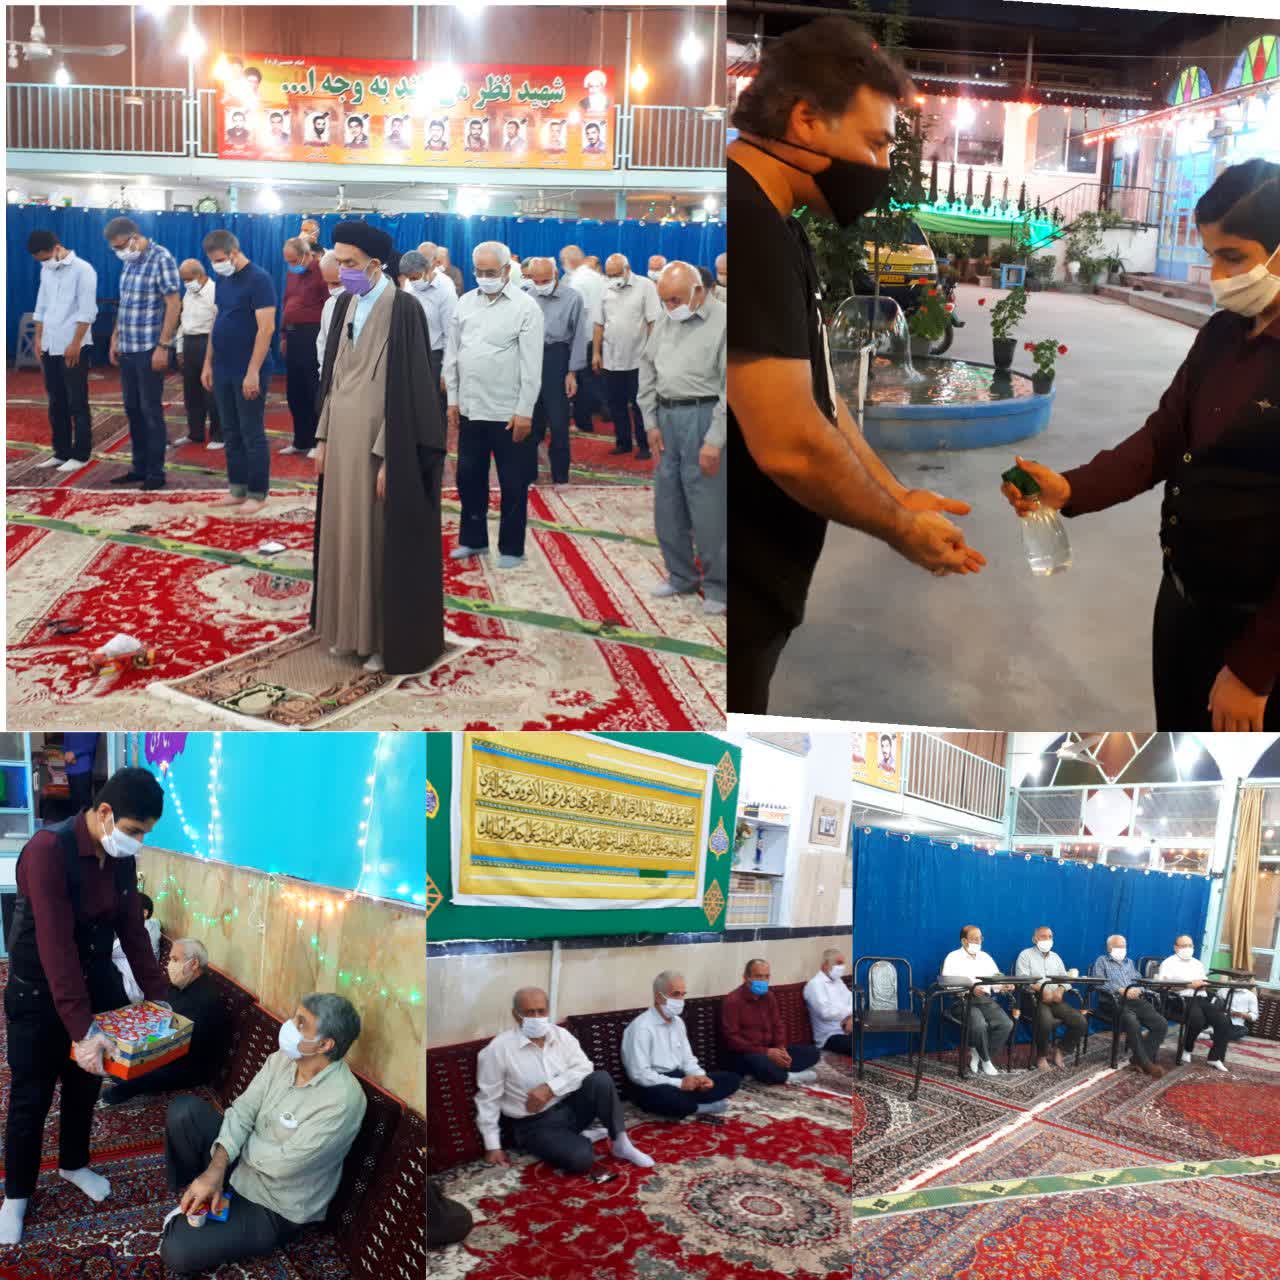 مراسم جشن میلاد امام رضا(ع) در کانون فرهنگی هنری مسجد گلشن بهشهر